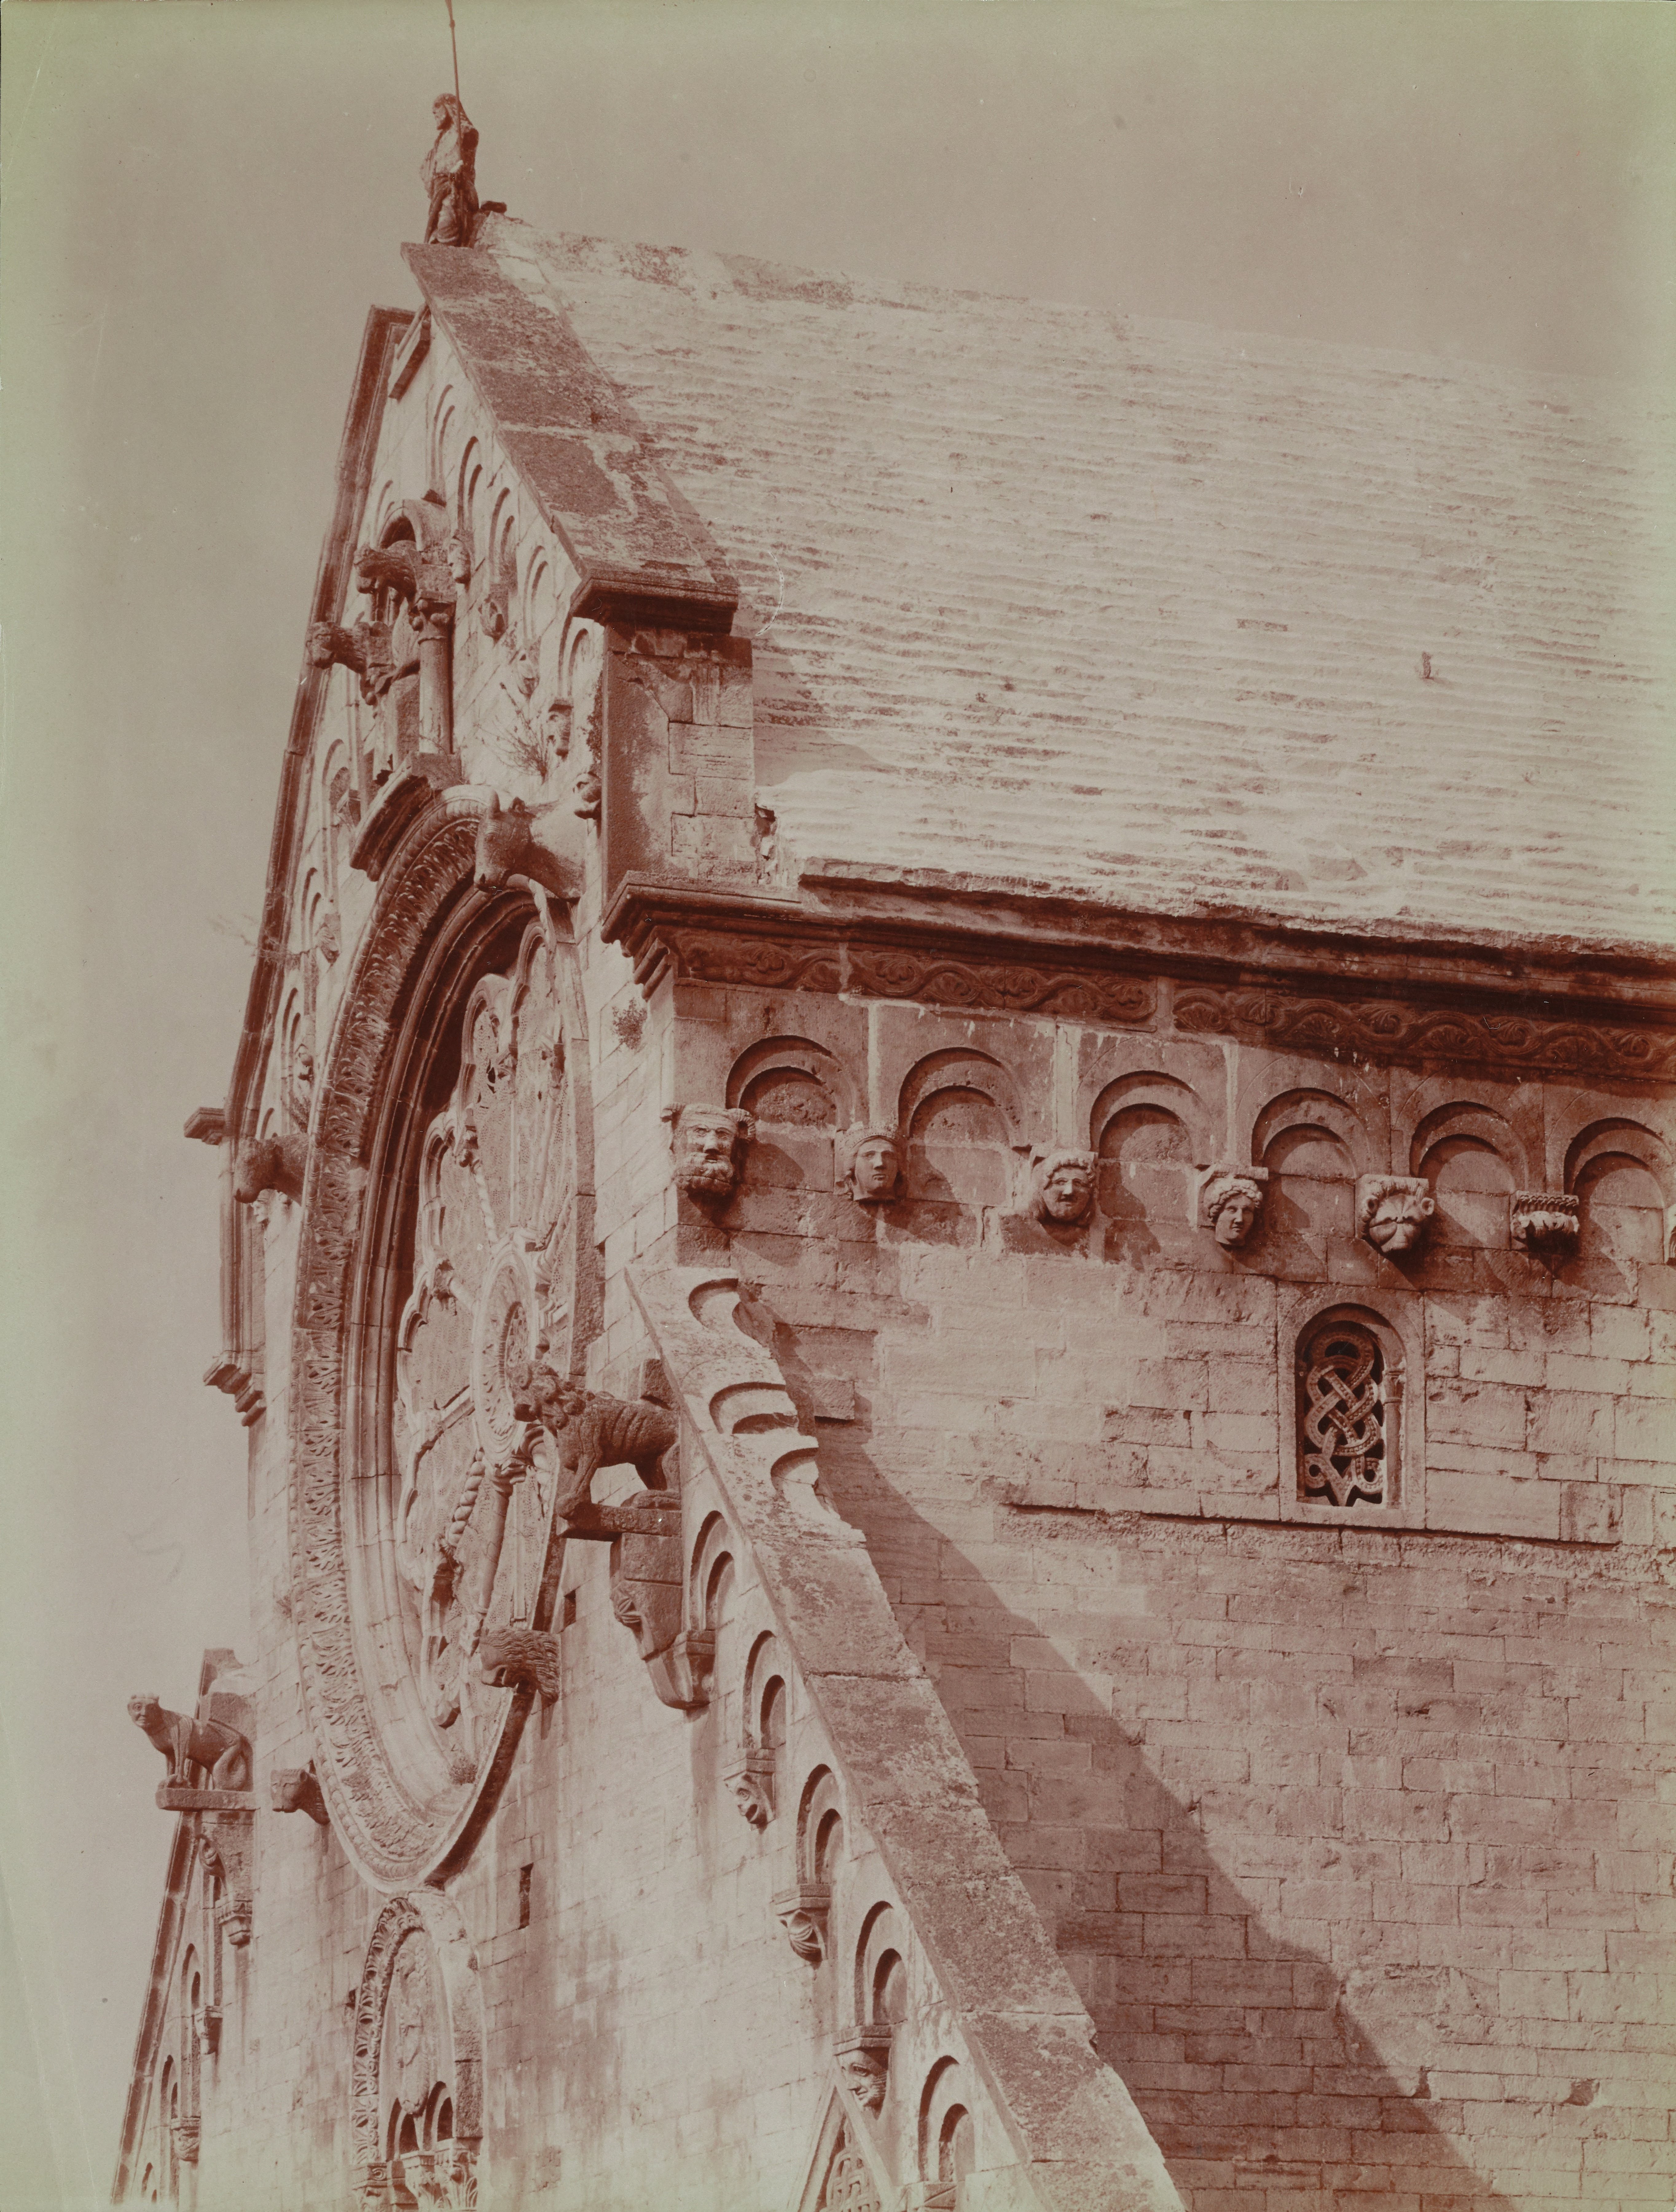 Fotografo non identificato, Ruvo di Puglia - Cattedrale S. Maria Assunta, facciata lato destro, 1901-1910, albumina, MPI6091653